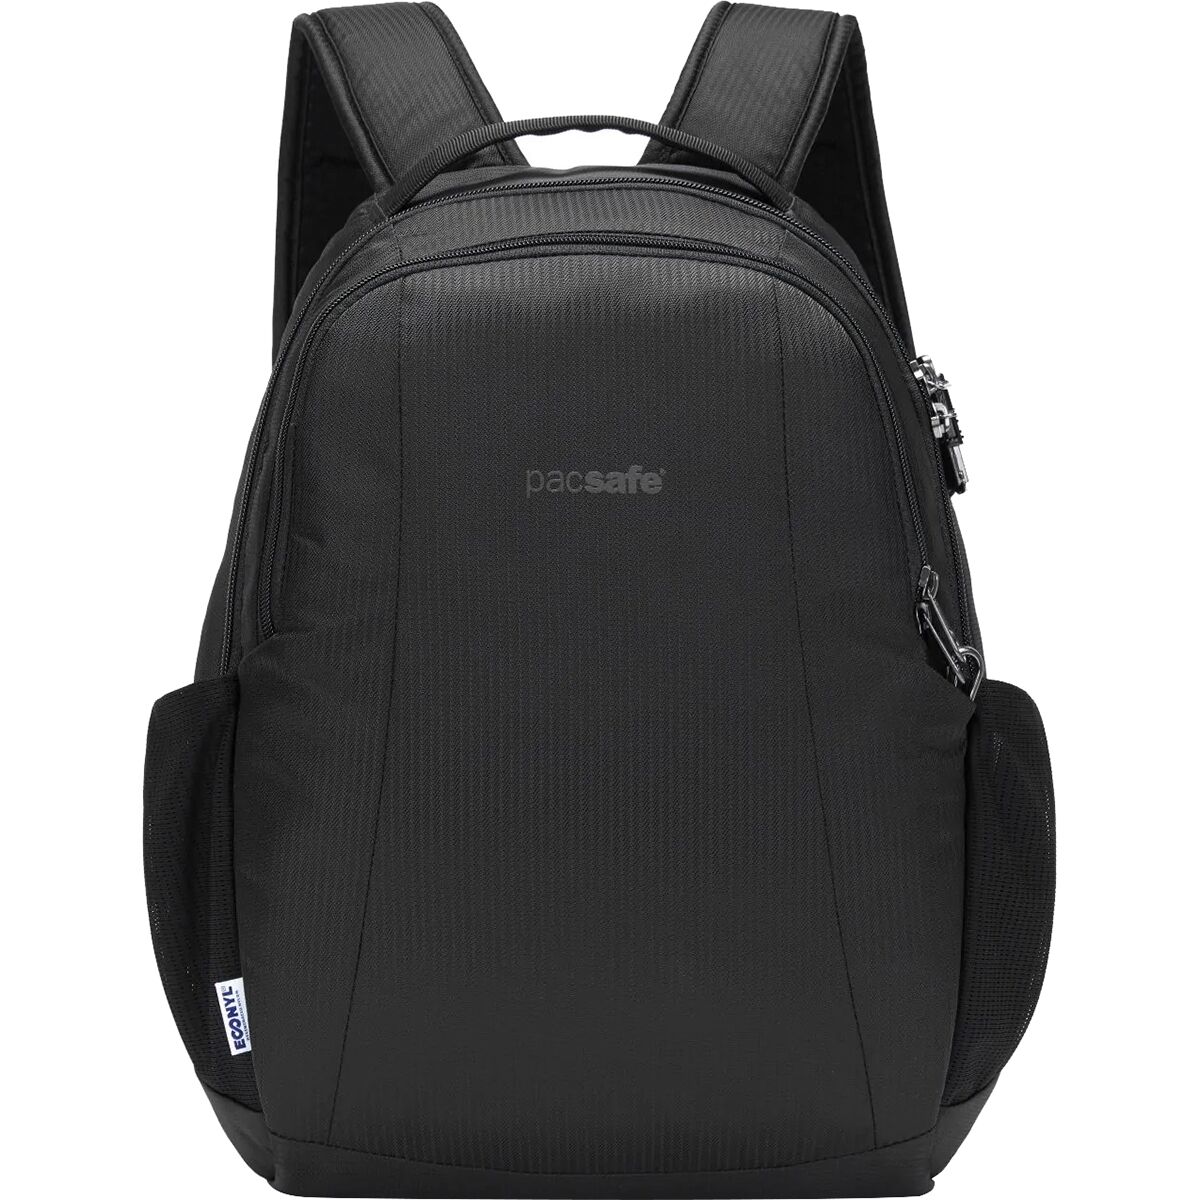 Pacsafe Metrosafe LS350 15L Backpack